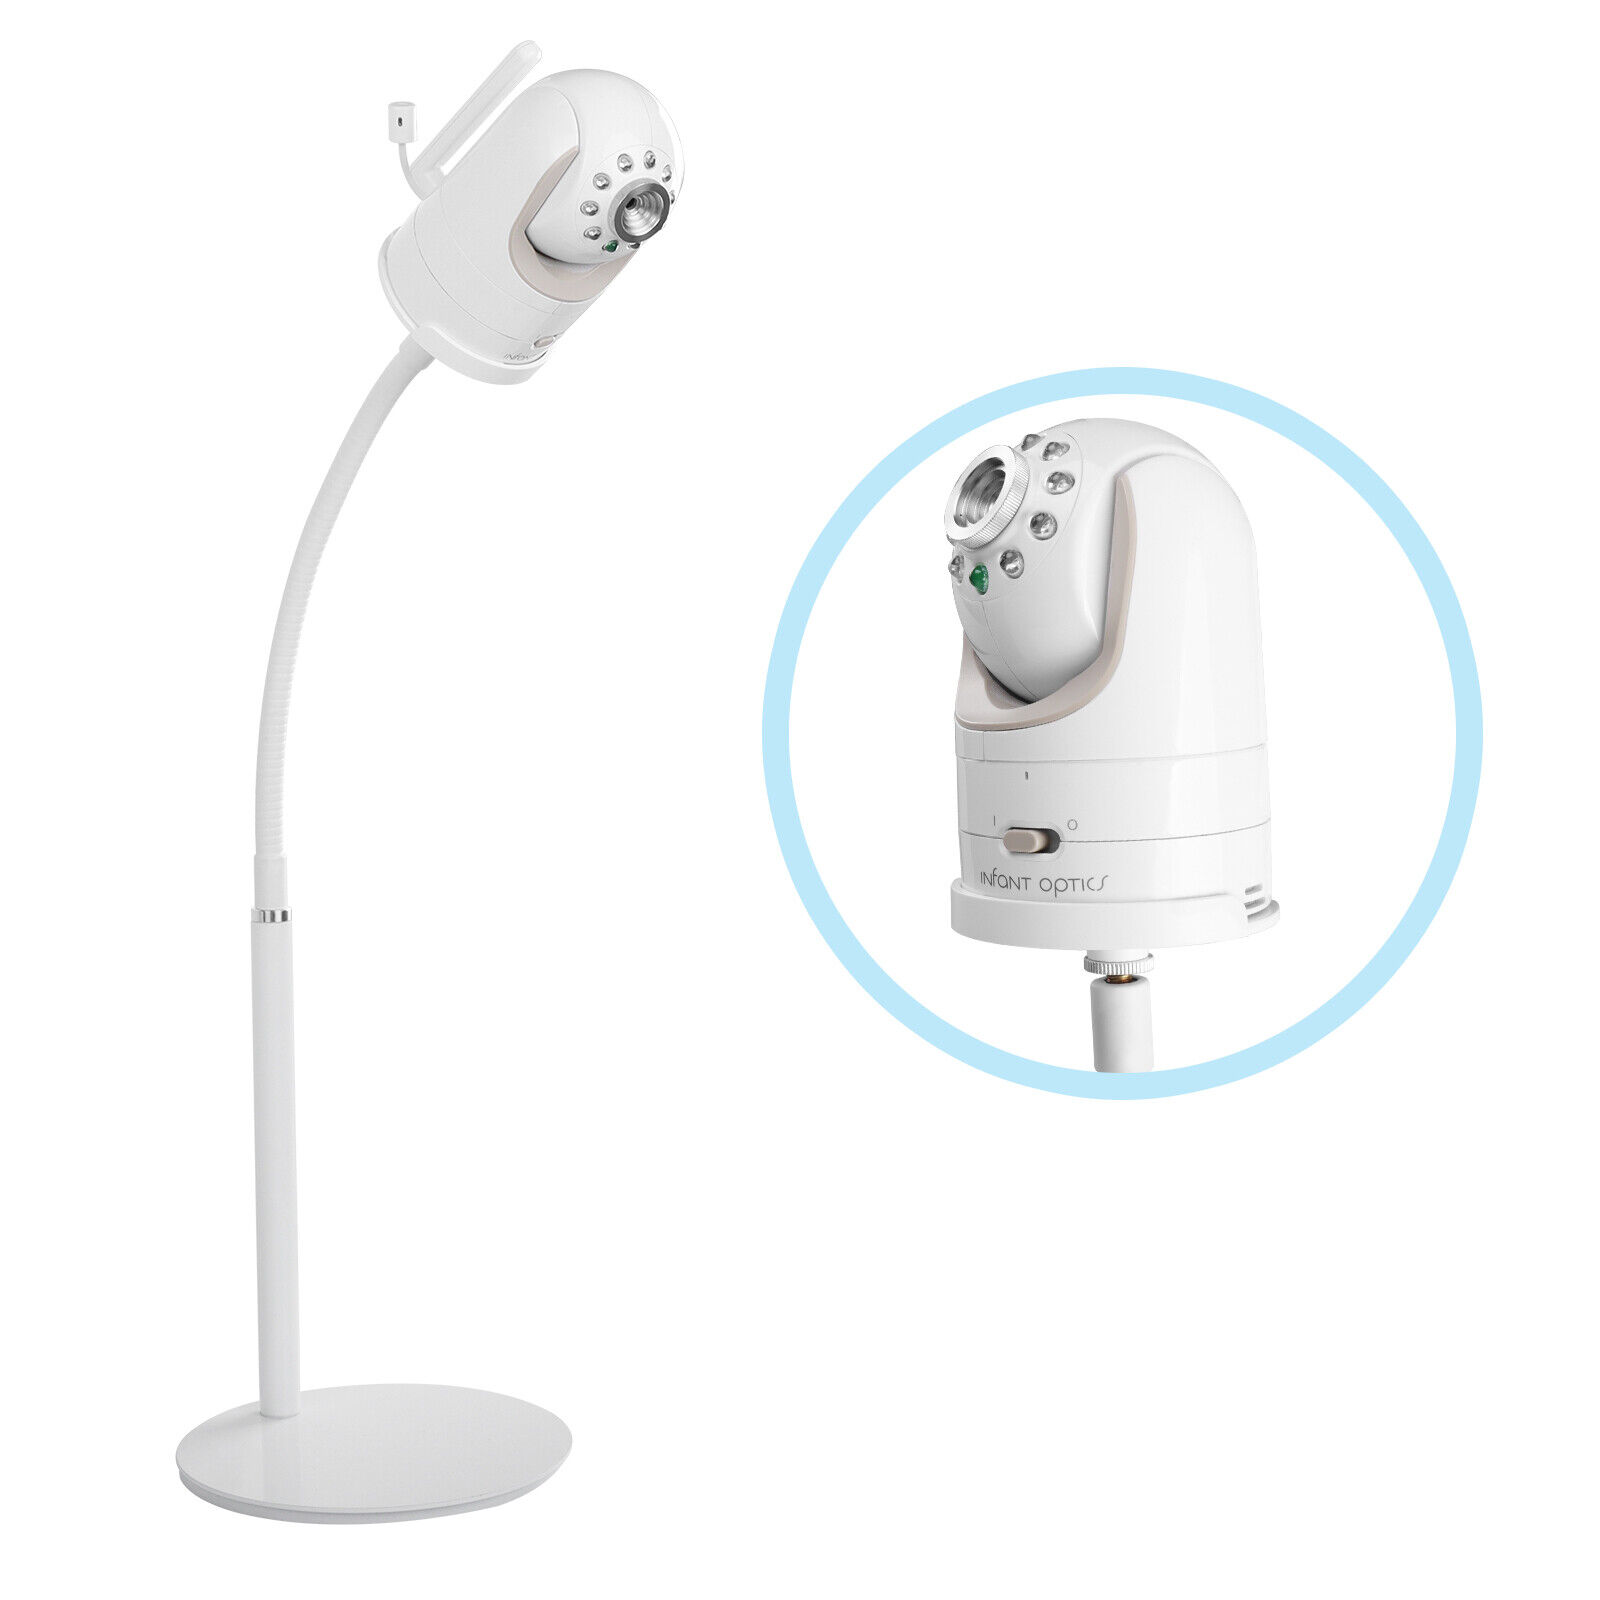 HOLACA Desktop stand for Infant OpticsDXR-8/DXR-8 Pro,Baby Monitor Camera Holder